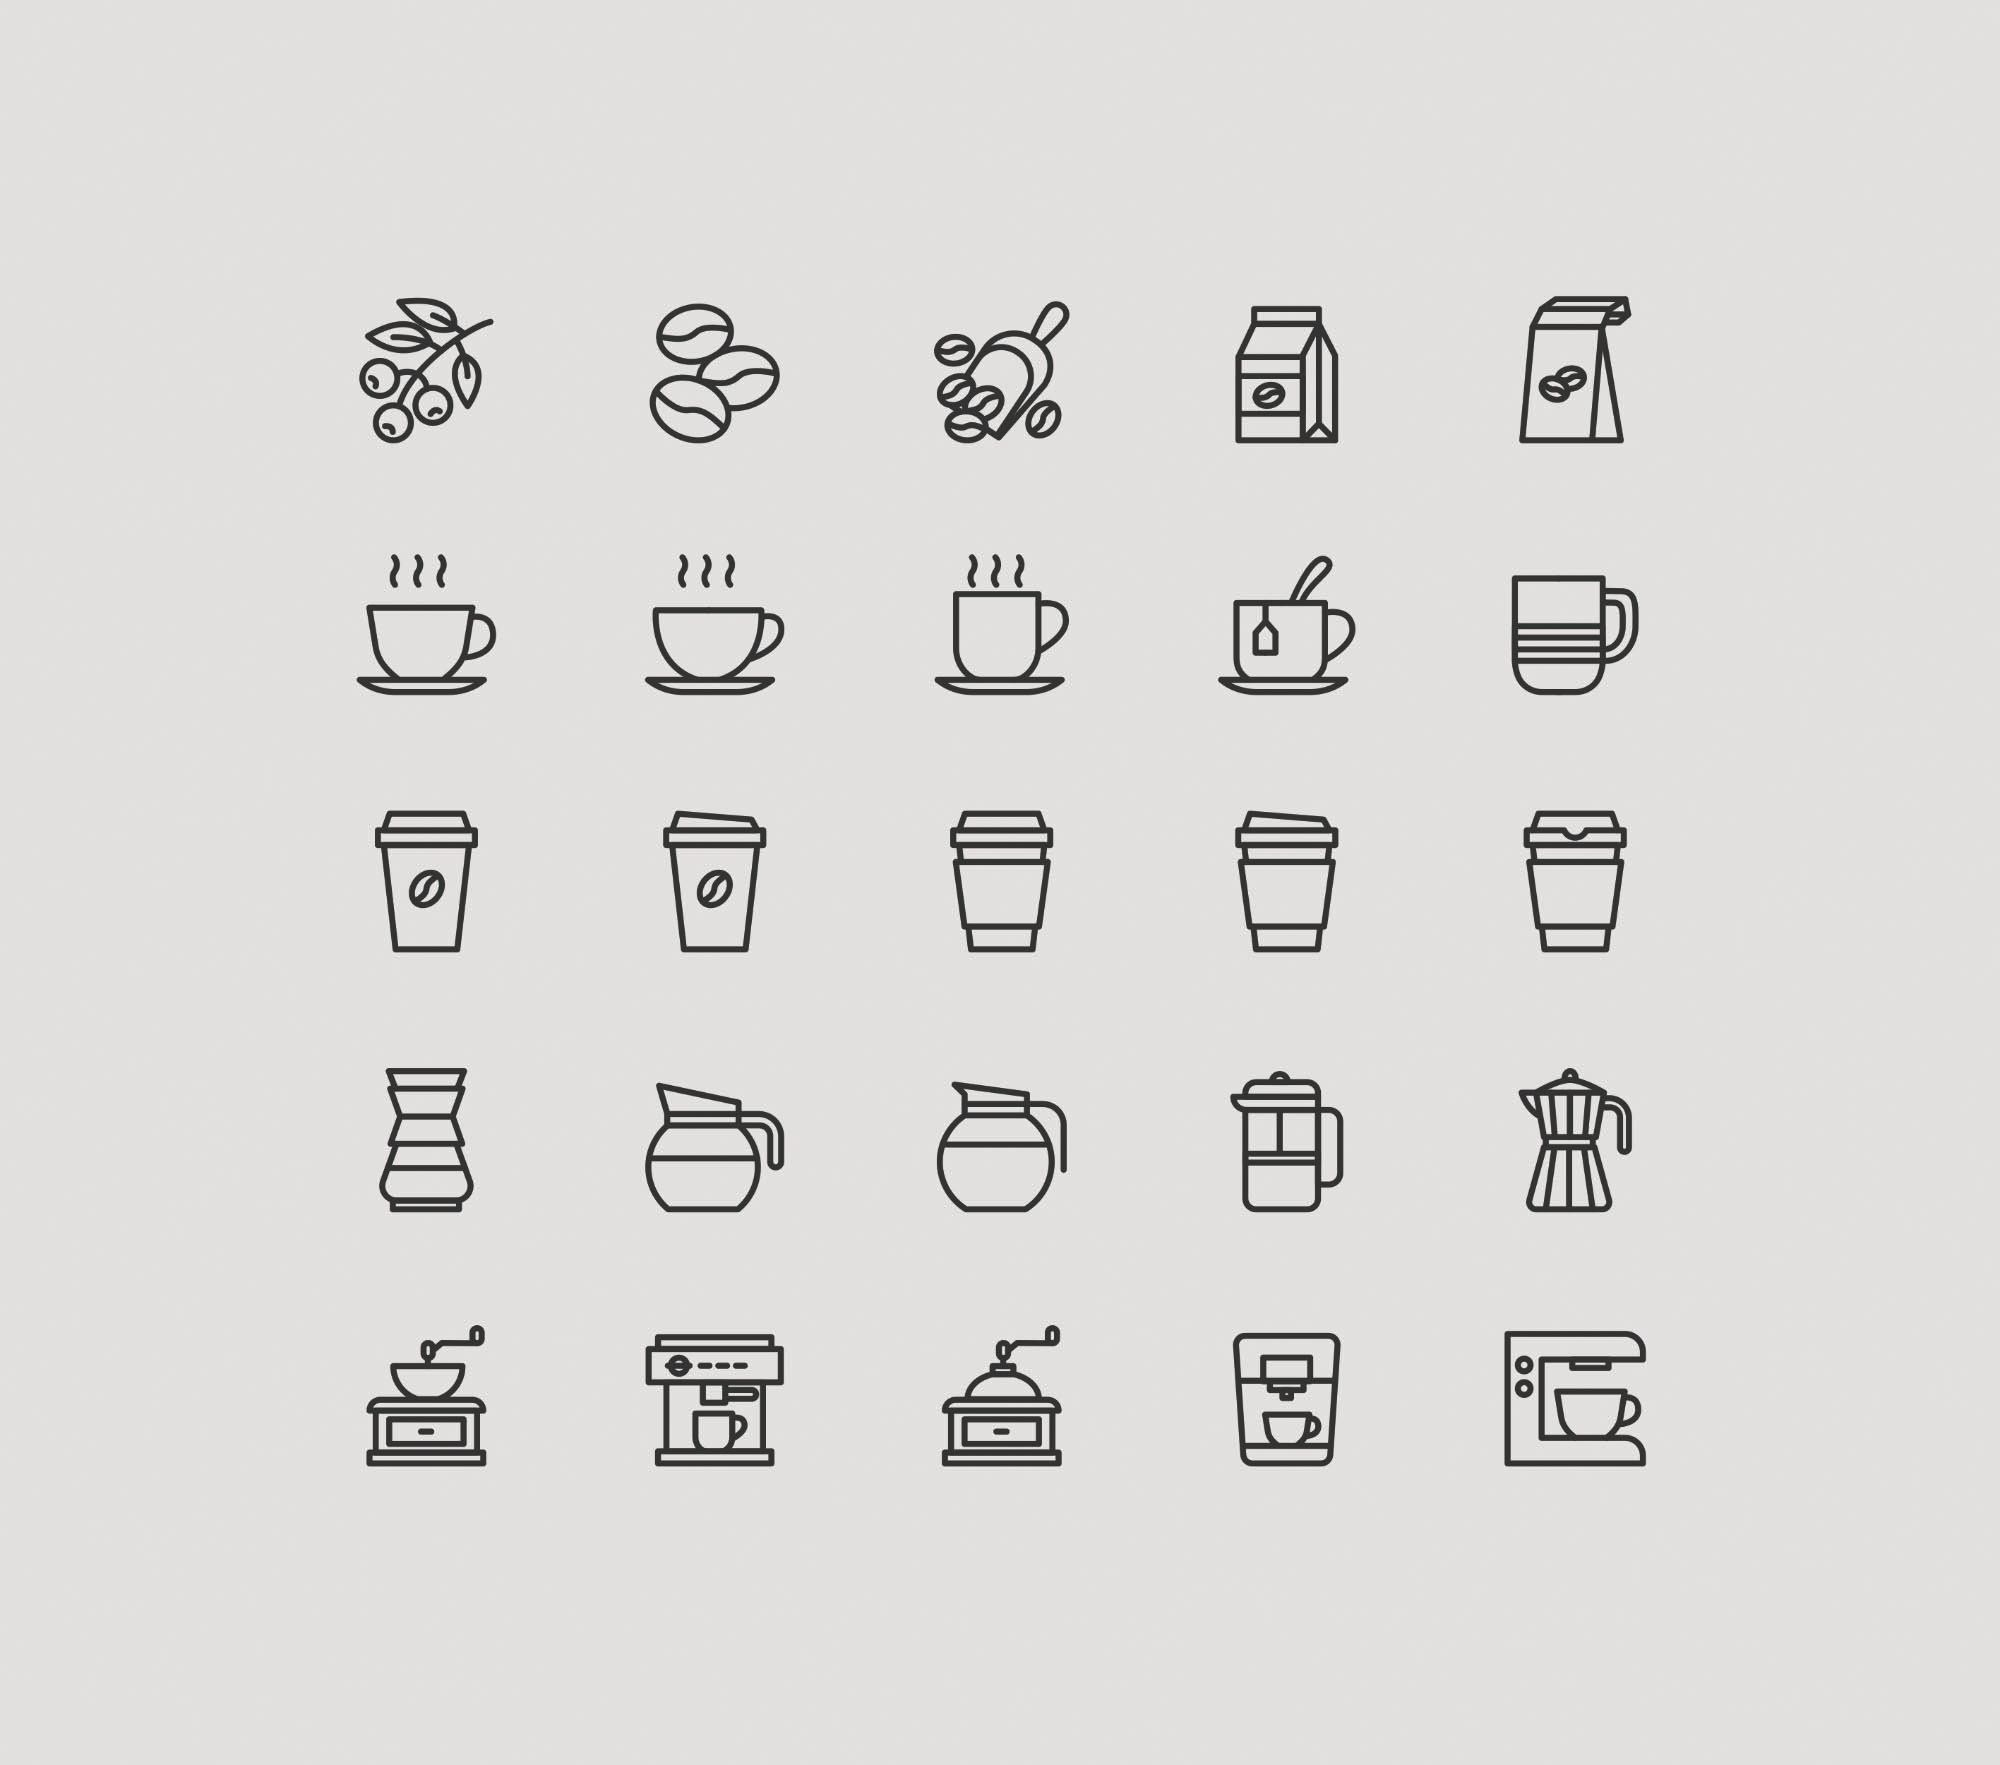 咖啡主题矢量图标素材 25 Coffee Theme Ico